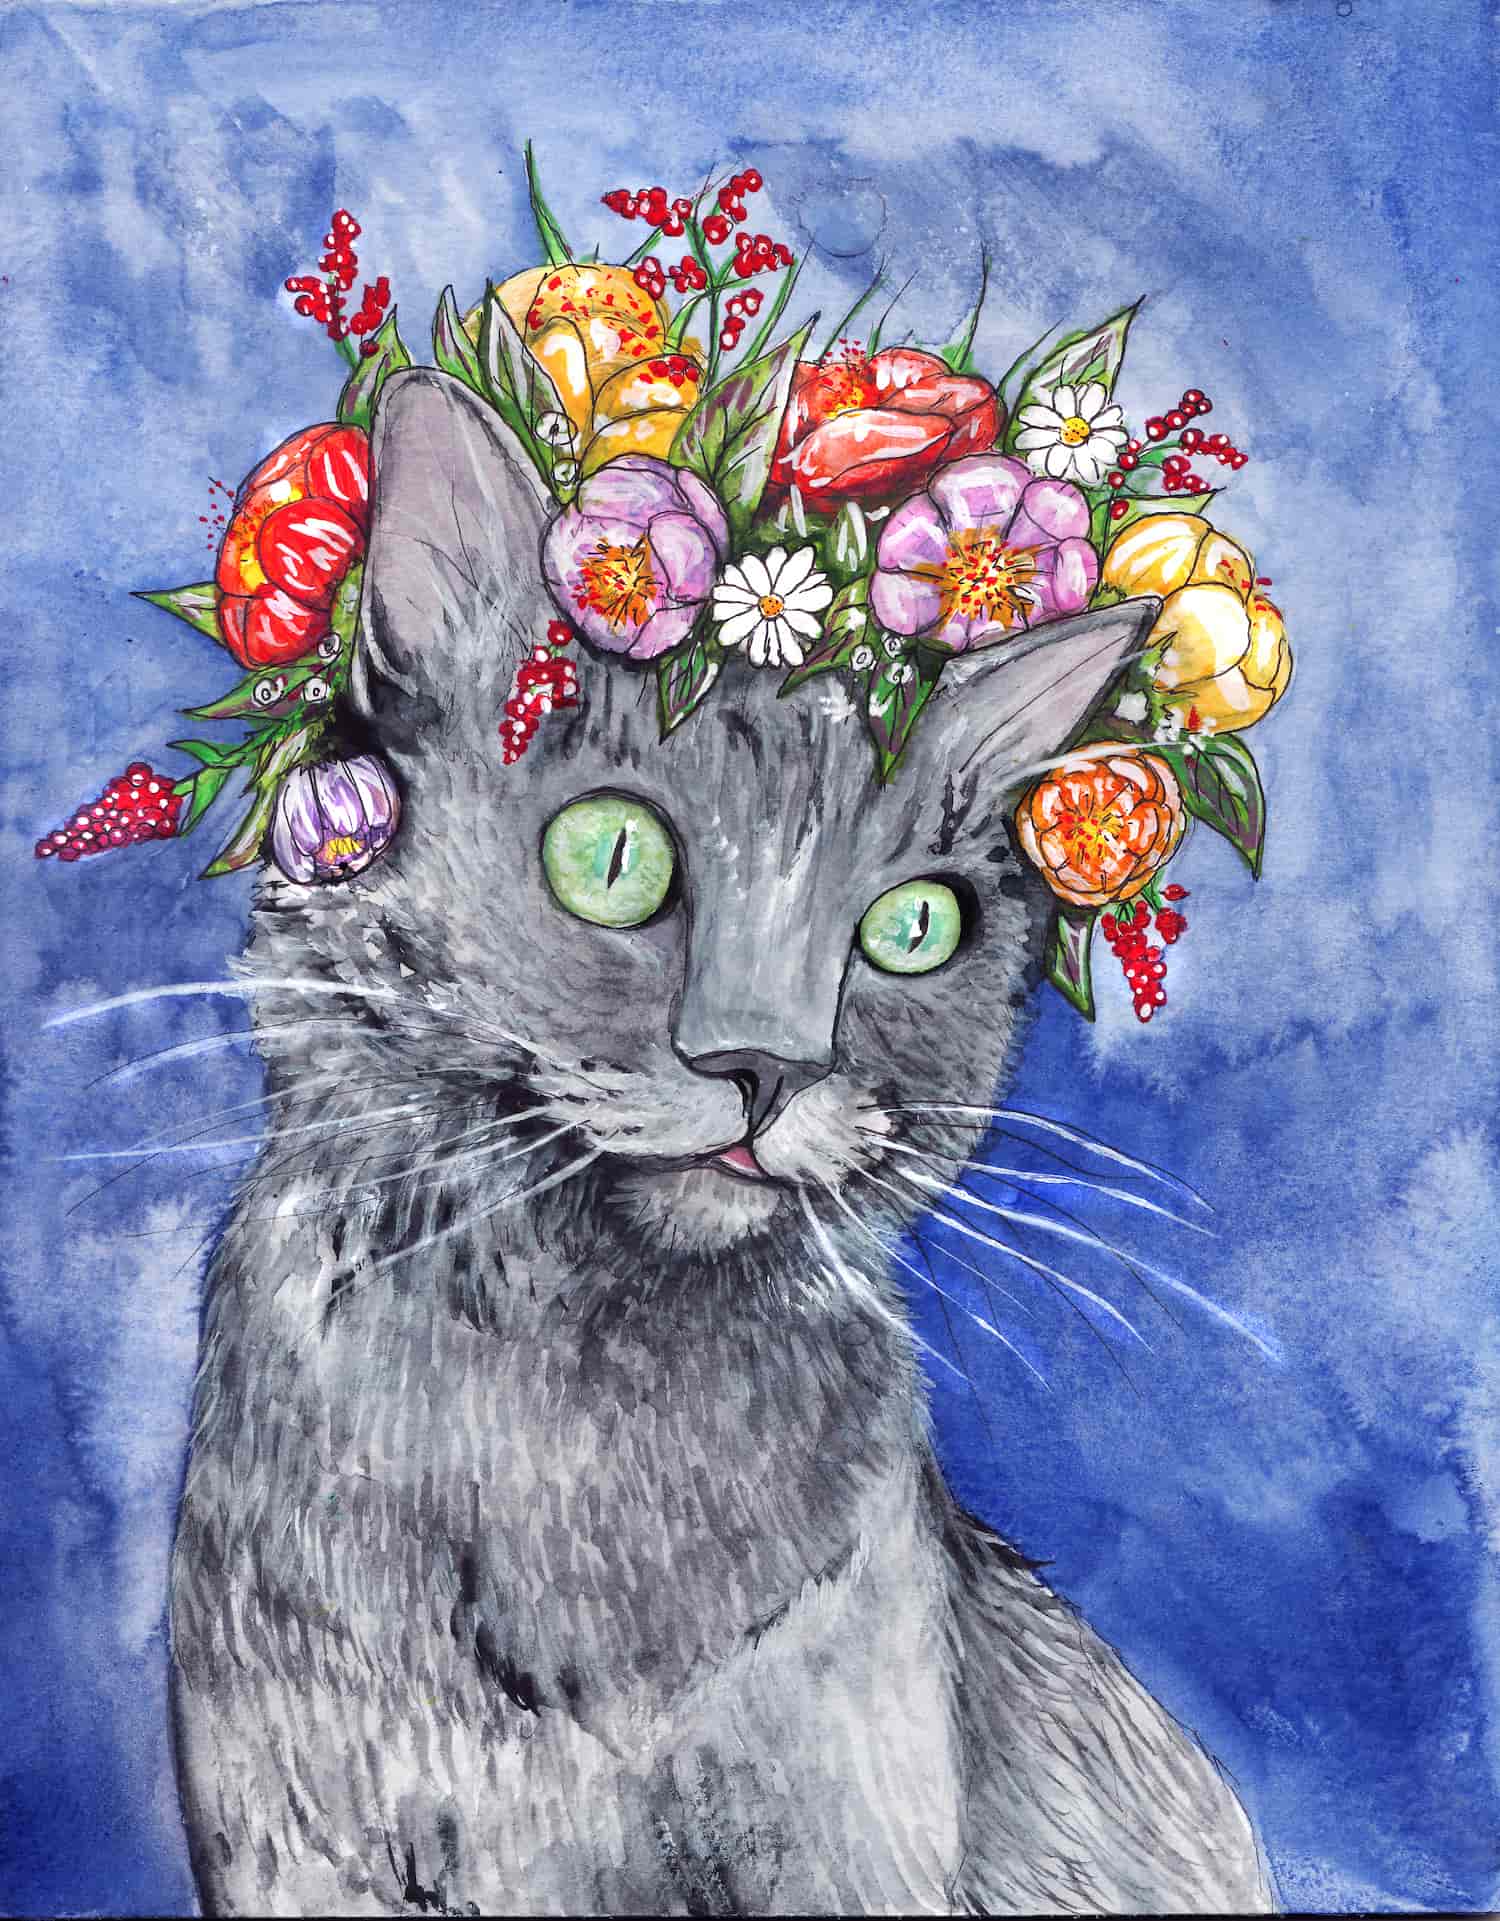 Katze mit Blumen im Haar, Digitaldruck, 2020, 21 x 27,5, 12 €